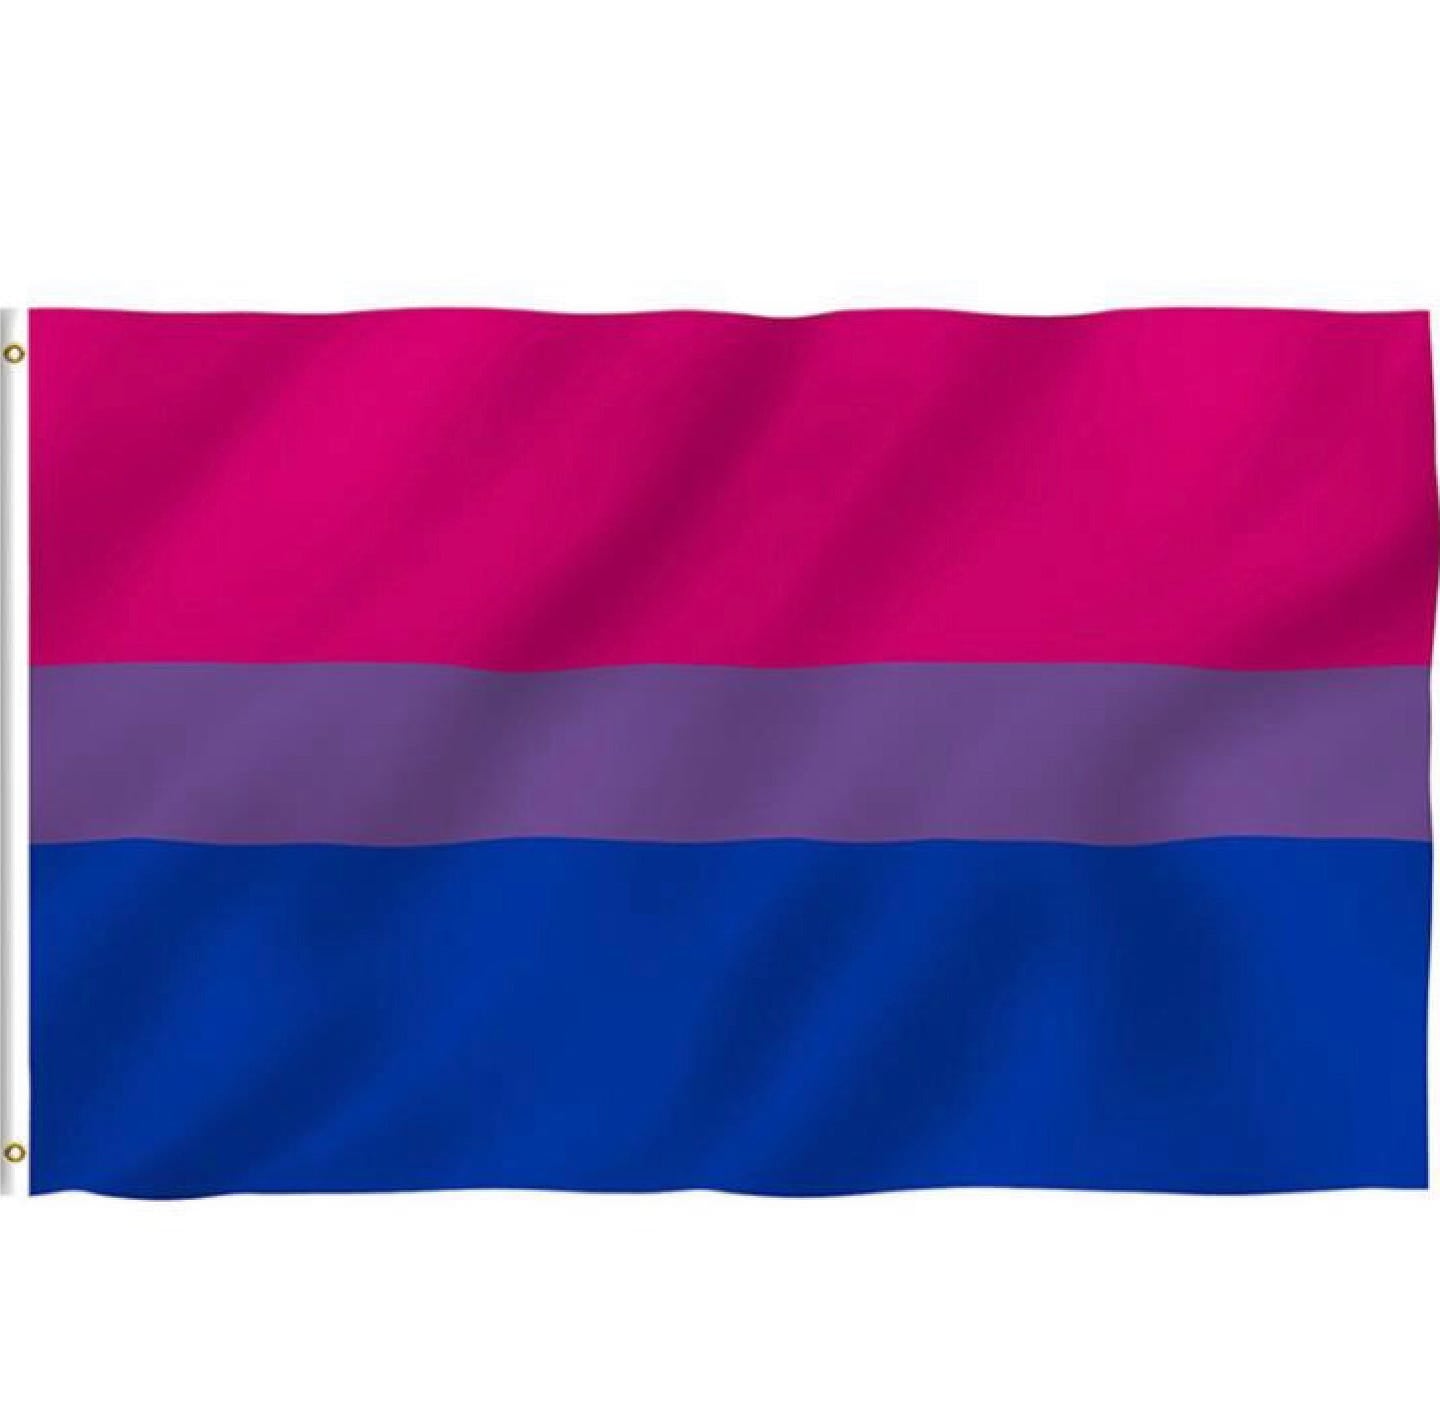 Bisexual Flag 150 x 90cm